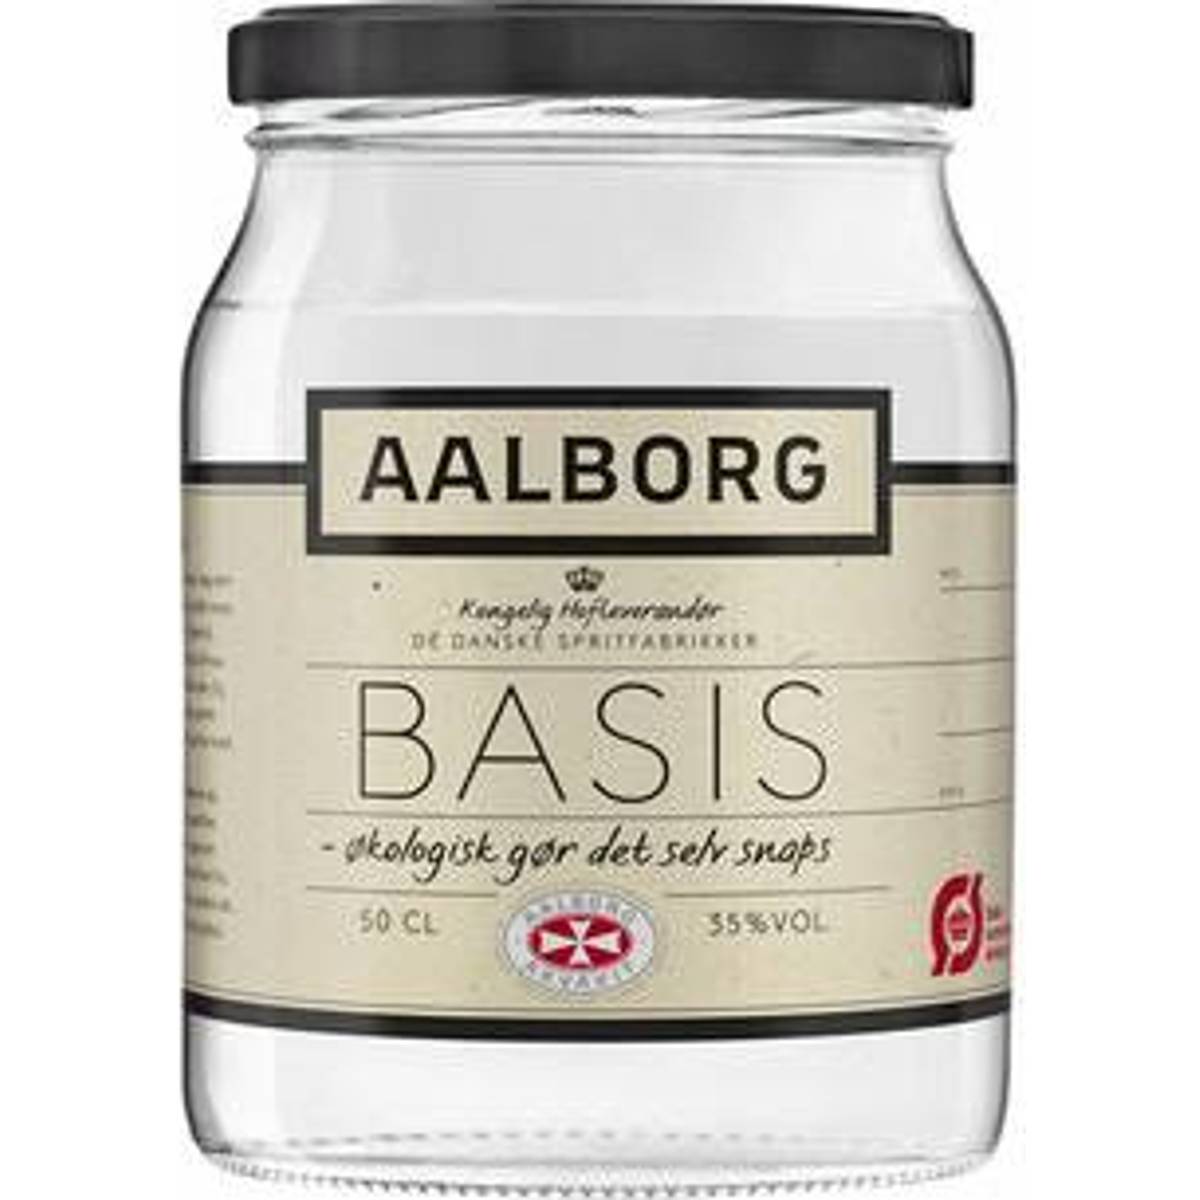 Aalborg Snaps Øl og spiritus (7 produkter) • Se billigste pris nu »